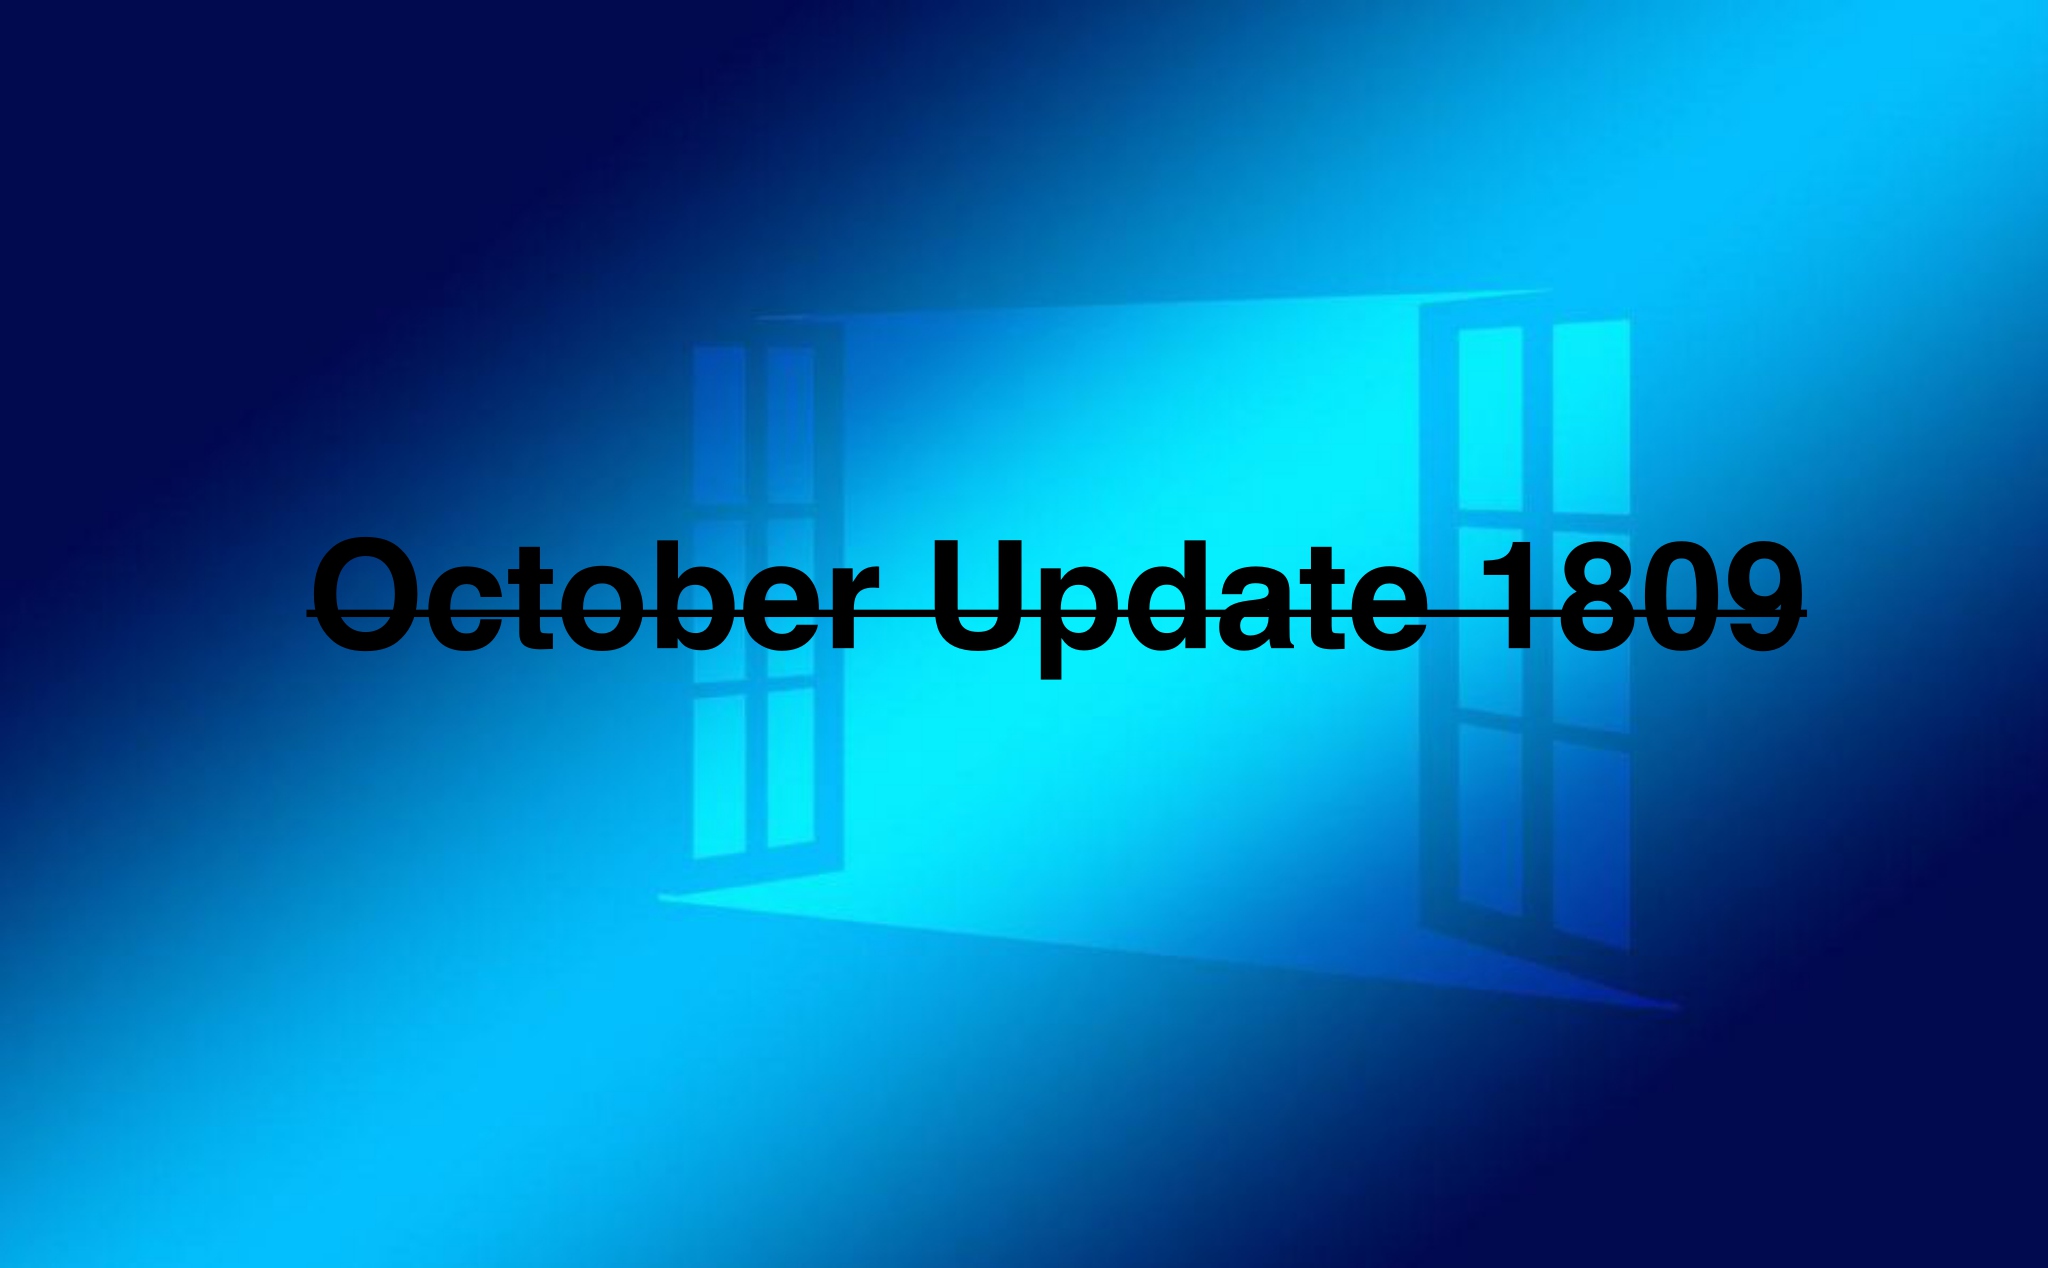 Microsoft tạm dừng cho phép tải bản October Update 1809 do có quá nhiều lỗi